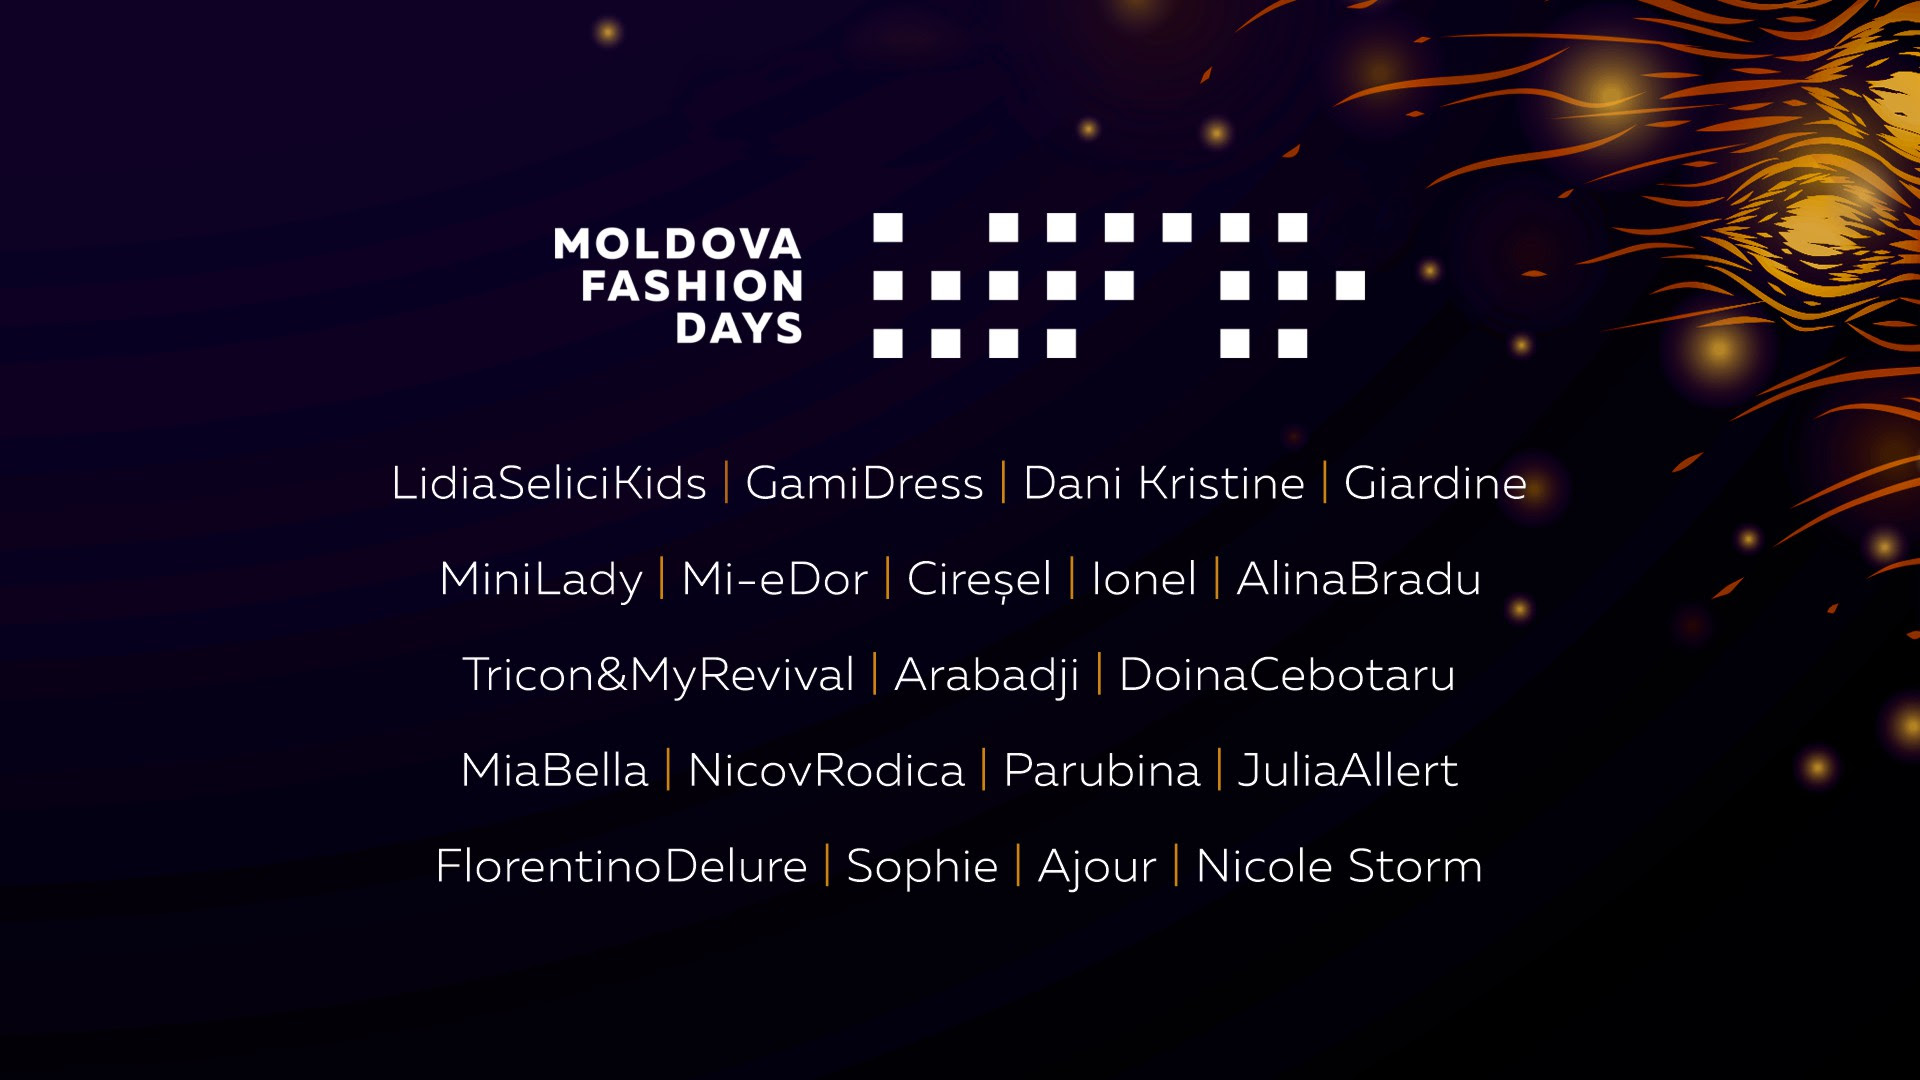  Branduri consacrate și nume noi în industria fashion – Designerii care își vor prezenta colecțiile la o nouă ediție Moldova Fashion Days